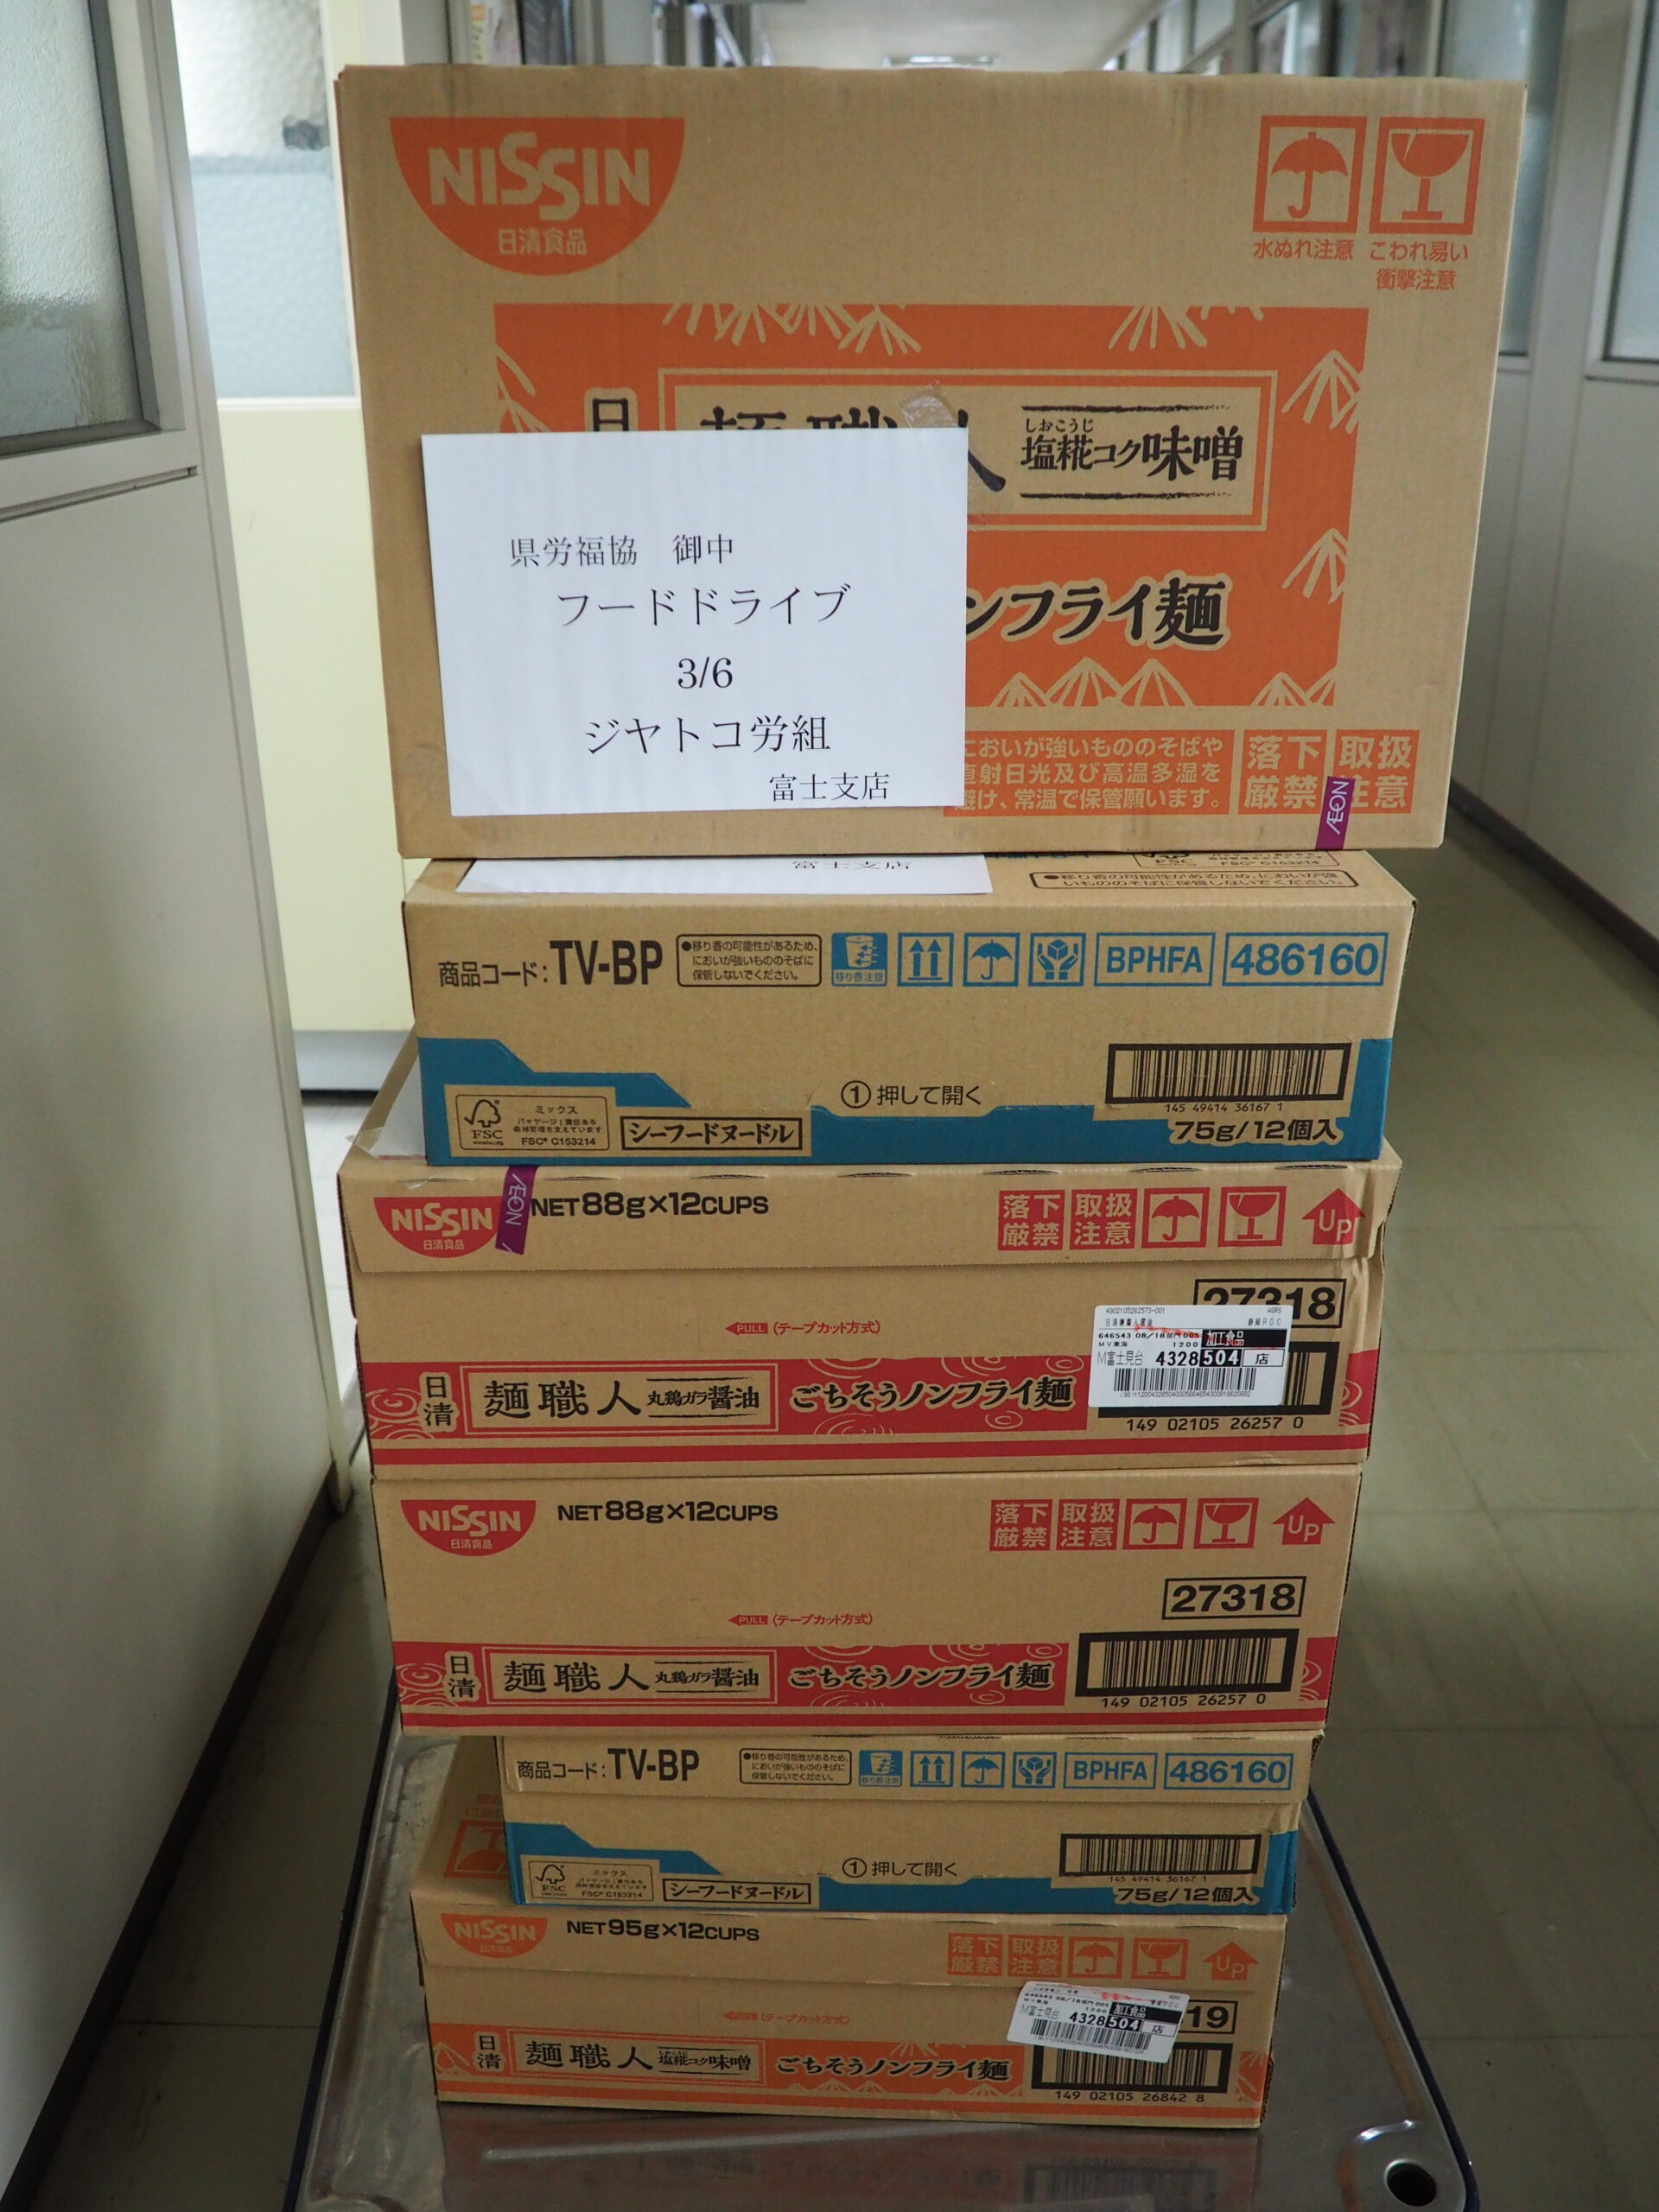 ジャトコ労働組合様・ろうきん浜松中央支店様（フードドライブ）から食品を提供いただきました。